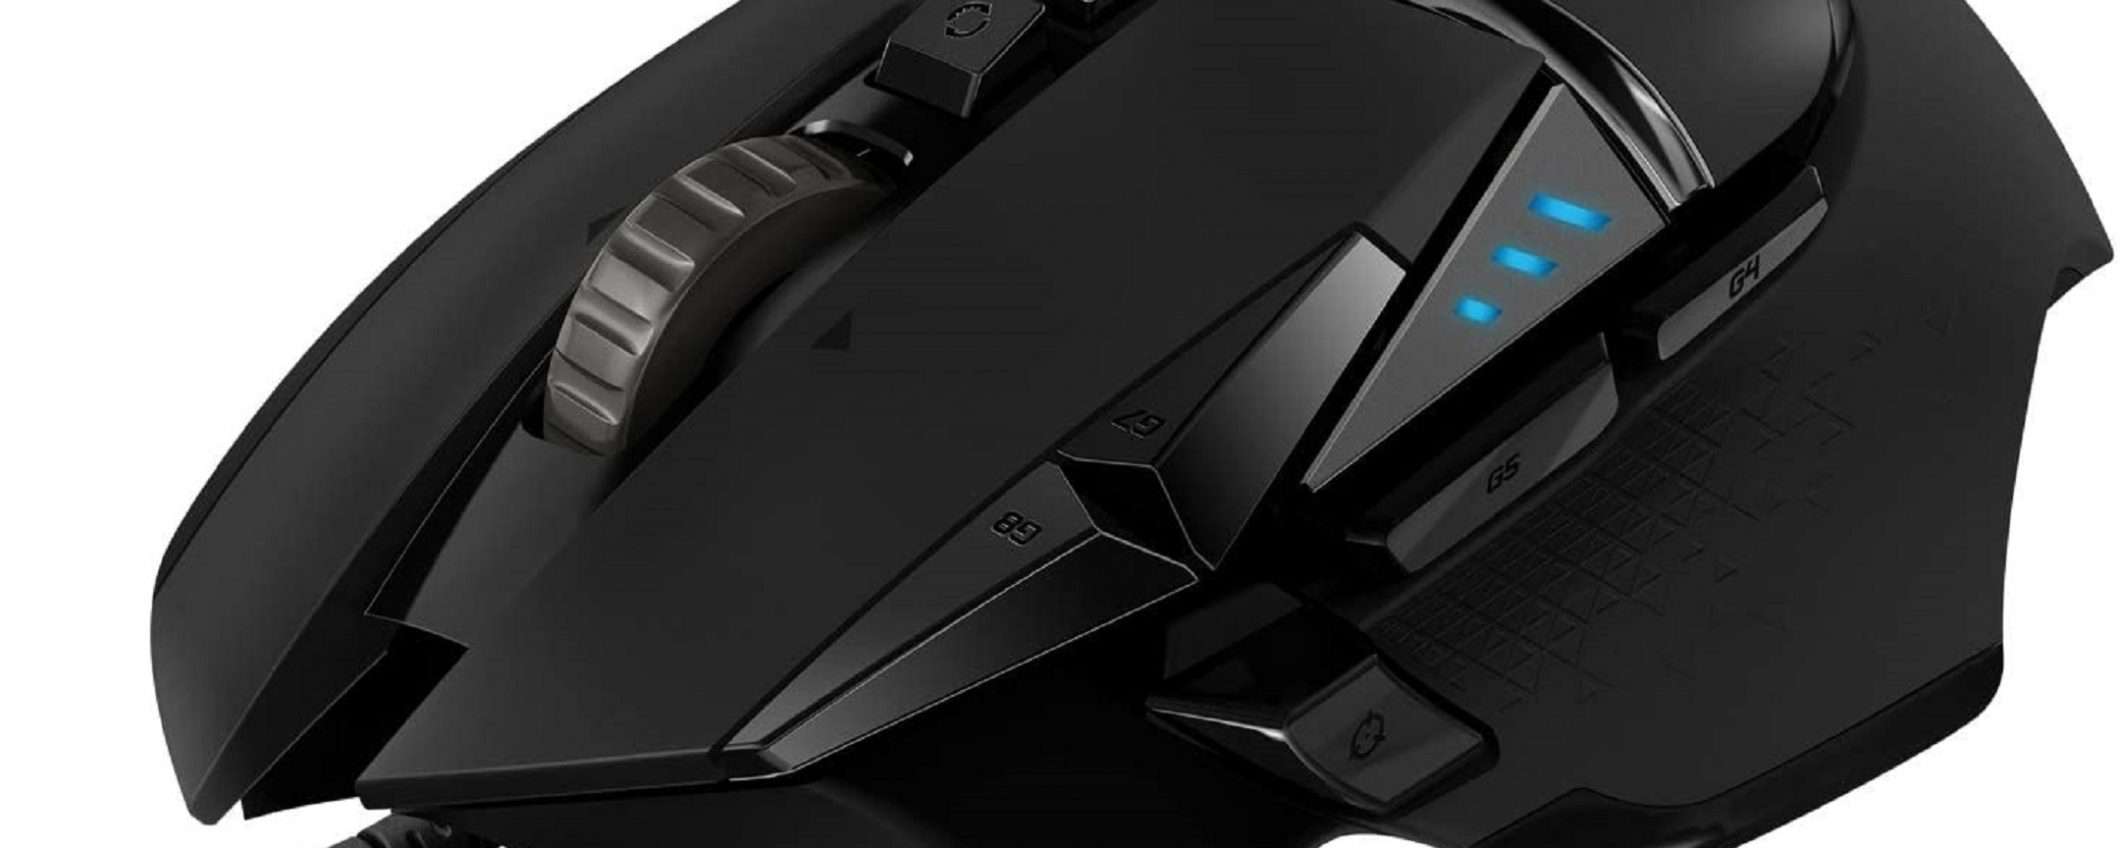 Affare Amazon: il mouse Logitech G502 HERO scontato del 52%